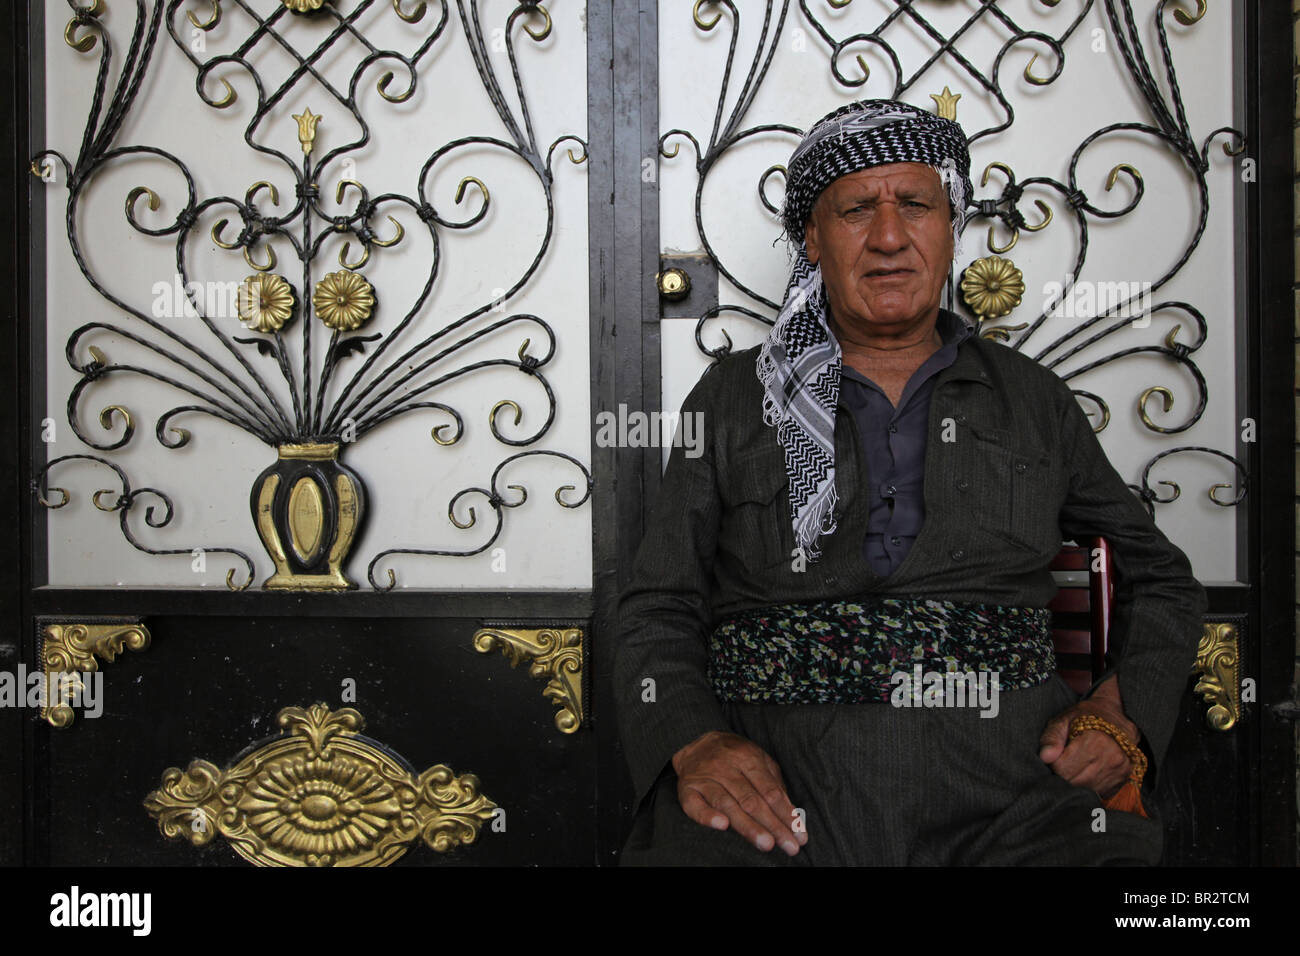 Ein kurdischer Mann mit traditionellen Kleidungsstück in der Stadt Erbil Arbil oder Irbil auch die Hauptstadt der Region Kurdistan im Nordirak geschrieben. Stockfoto